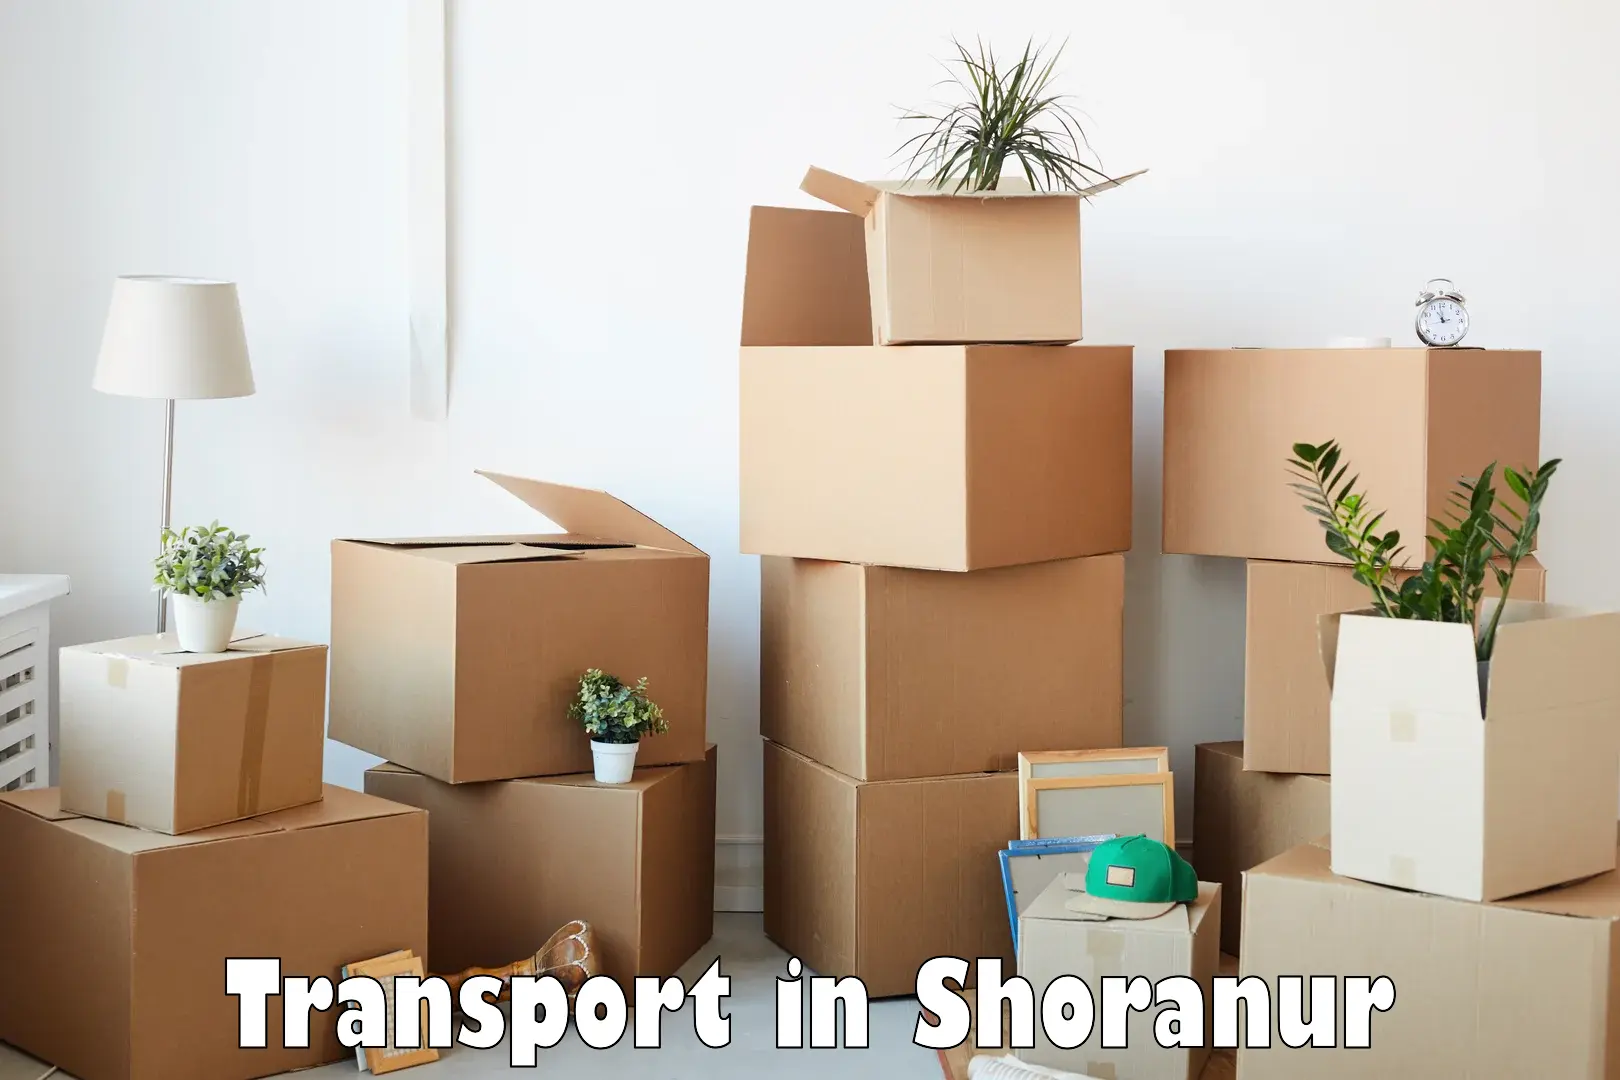 Furniture transport service in Shoranur